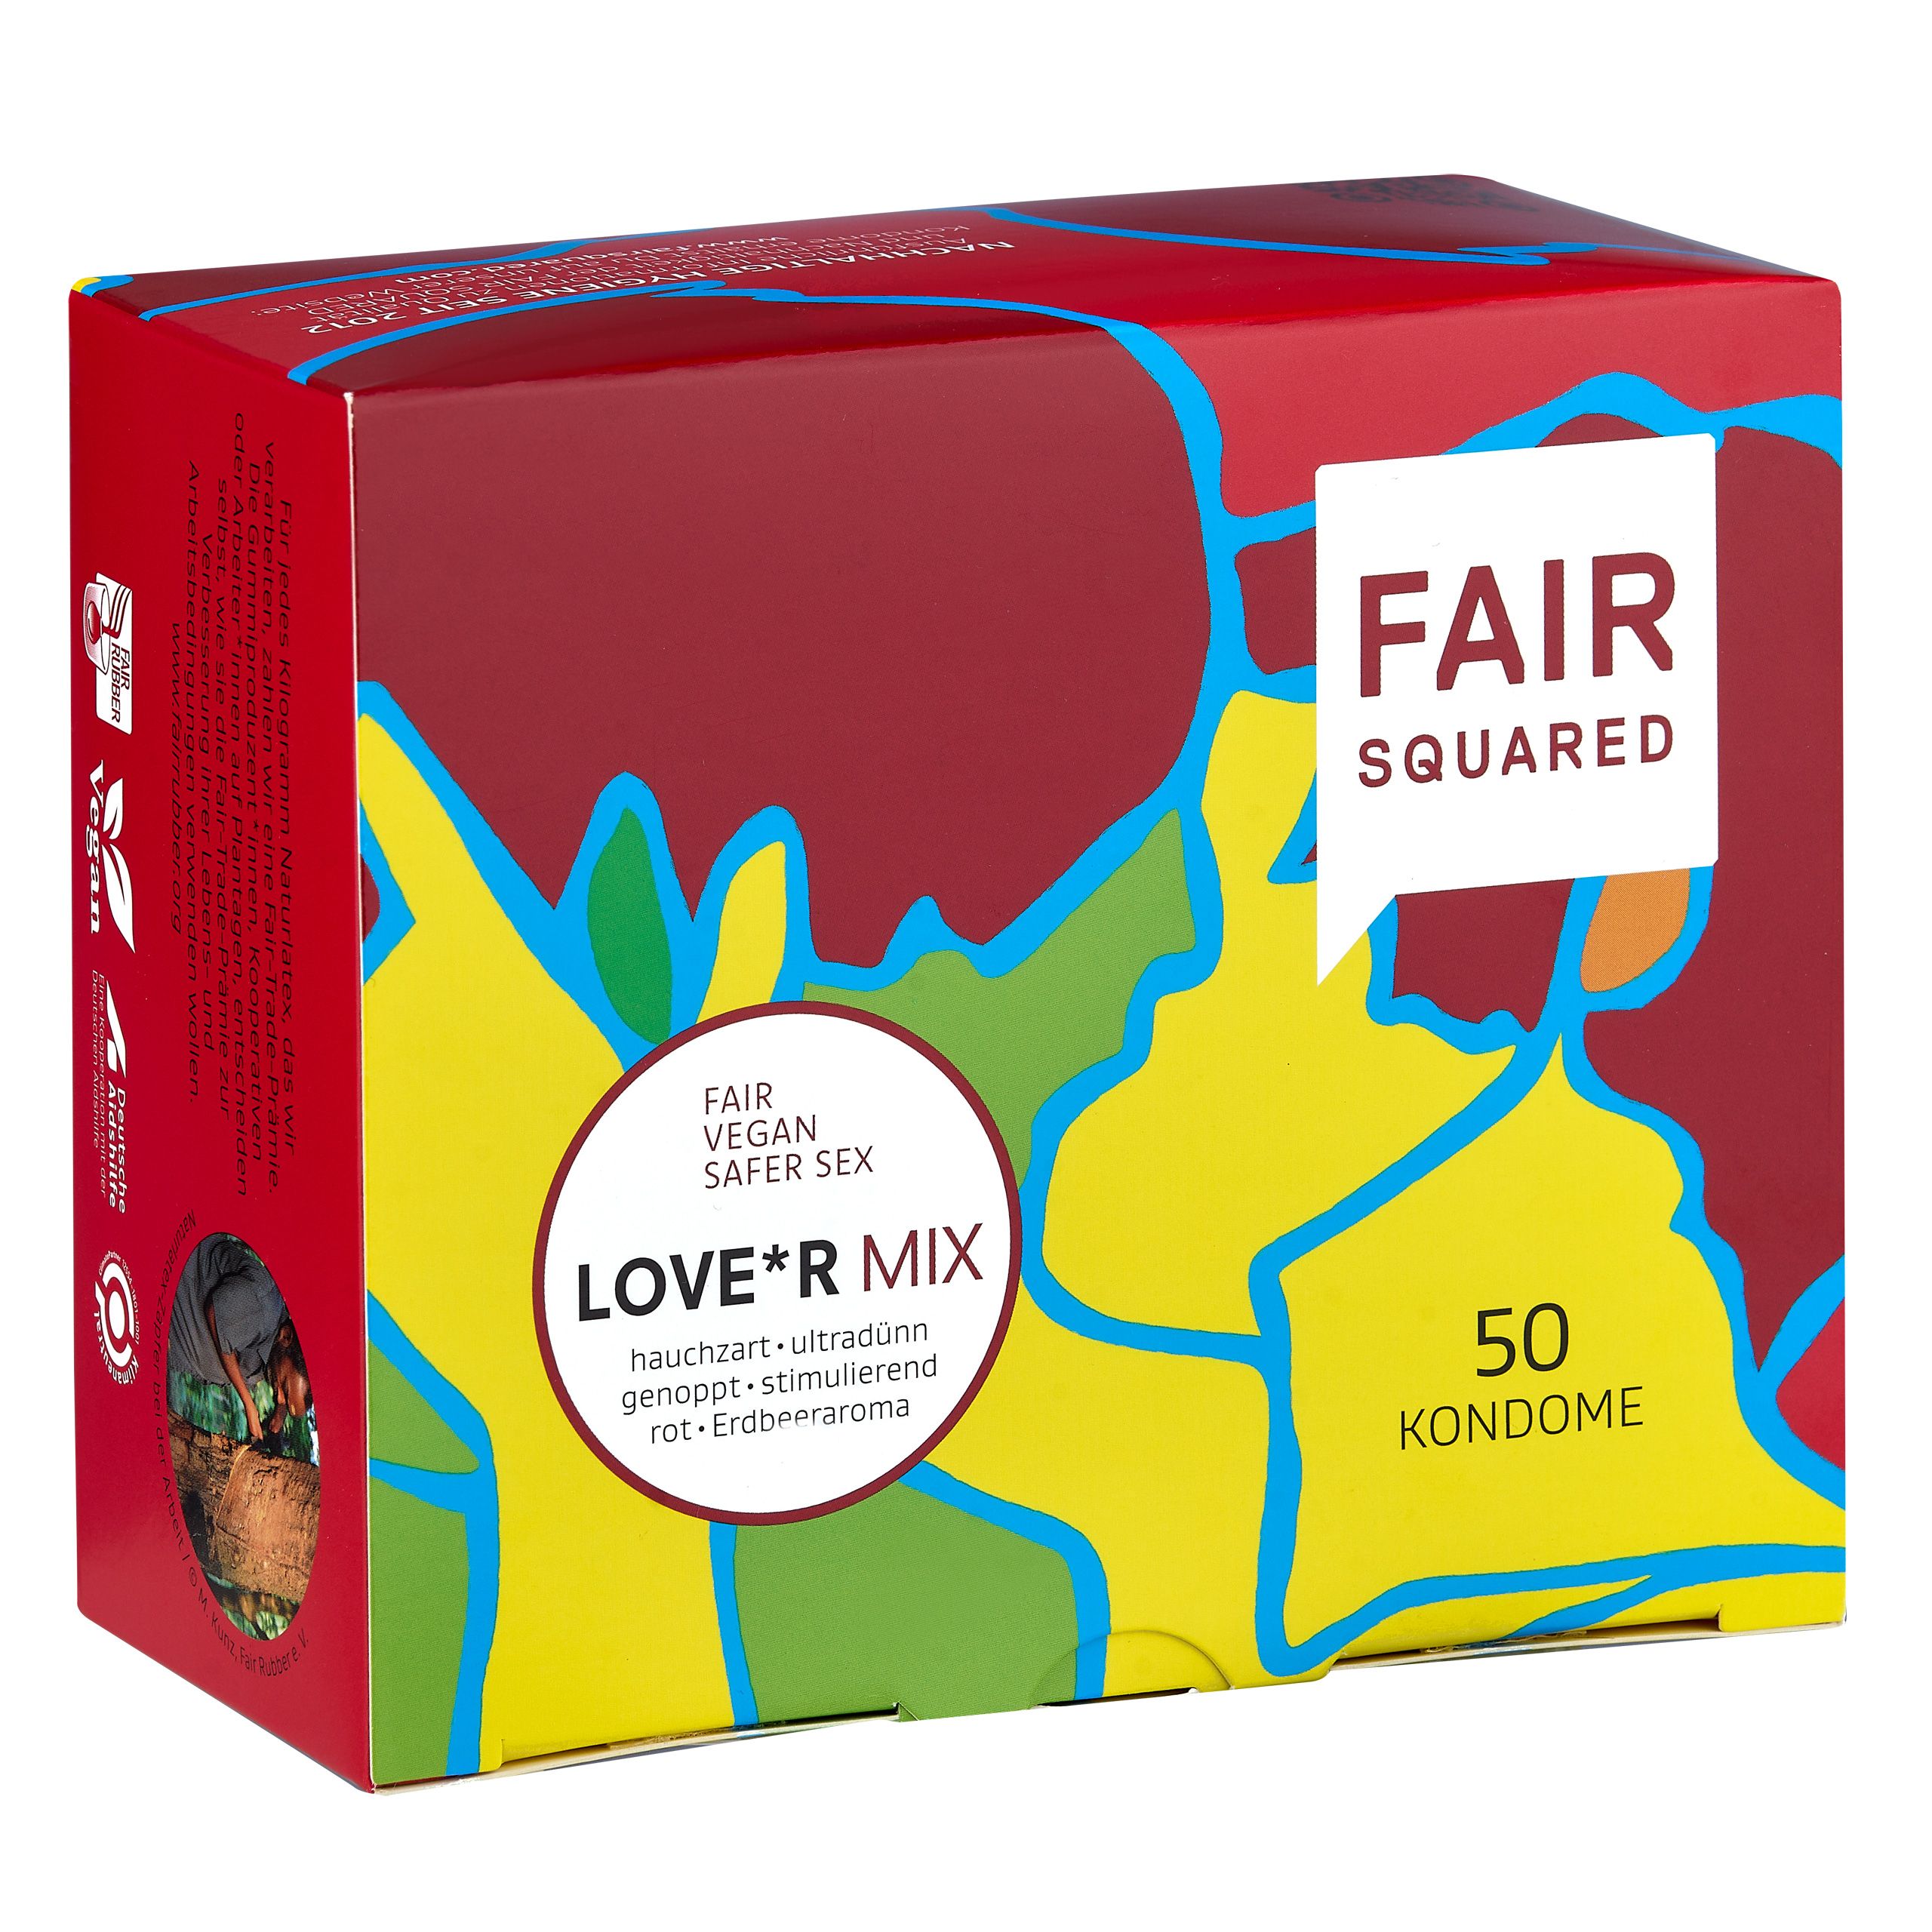 FAIR SQUARED Kondome LOVE*R MIX Box